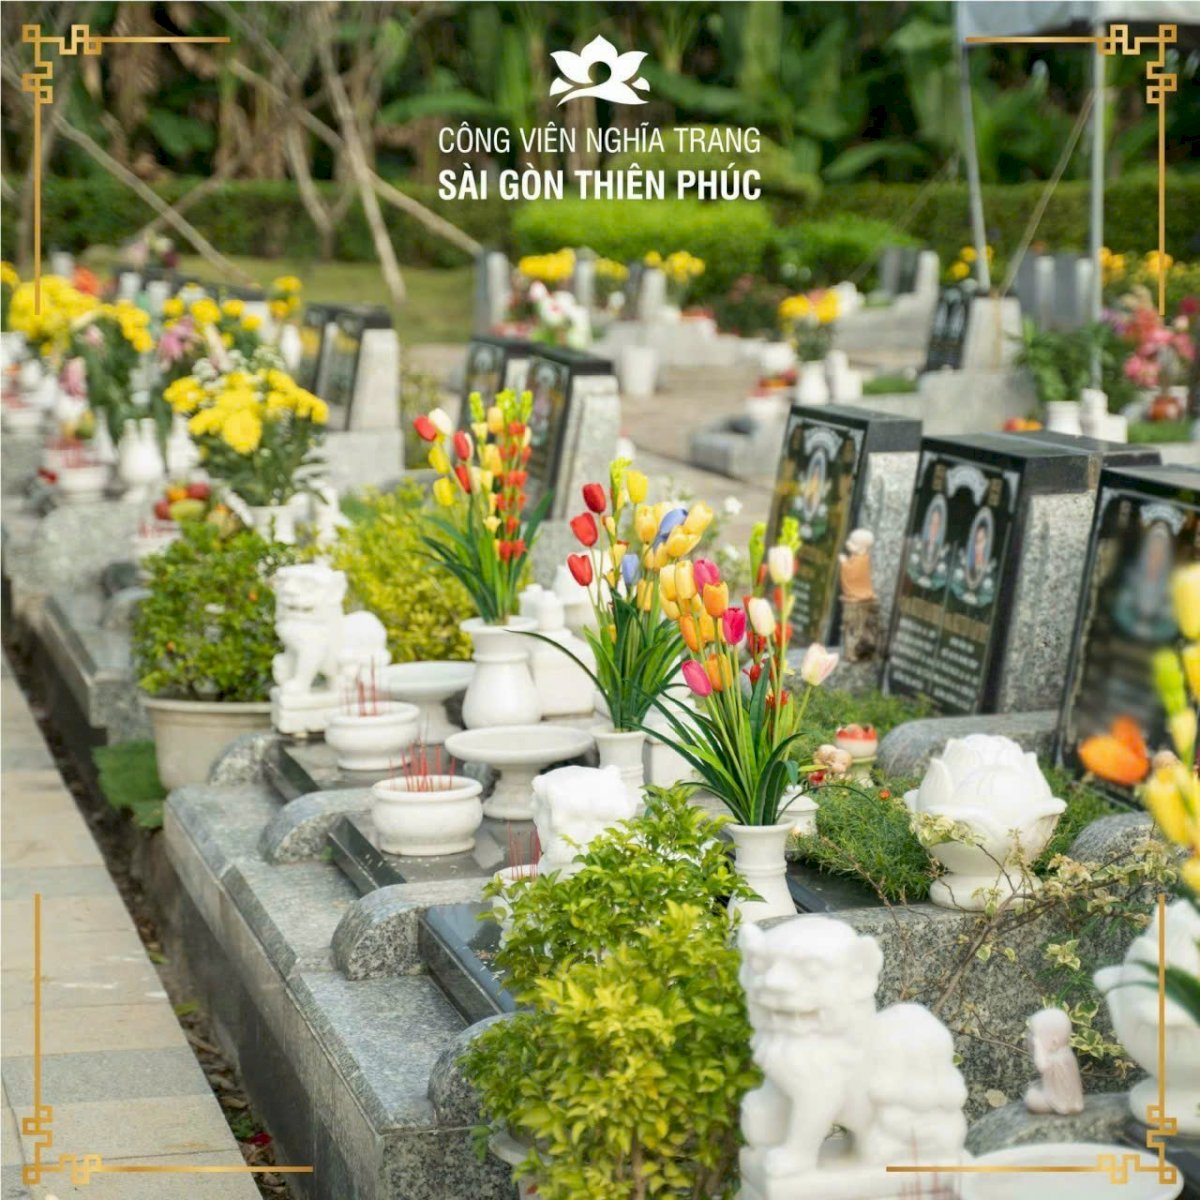 Bán nền đất huyệt mộ trong Nghĩa trang cao cấp Sài Gòn Thiên Phúc